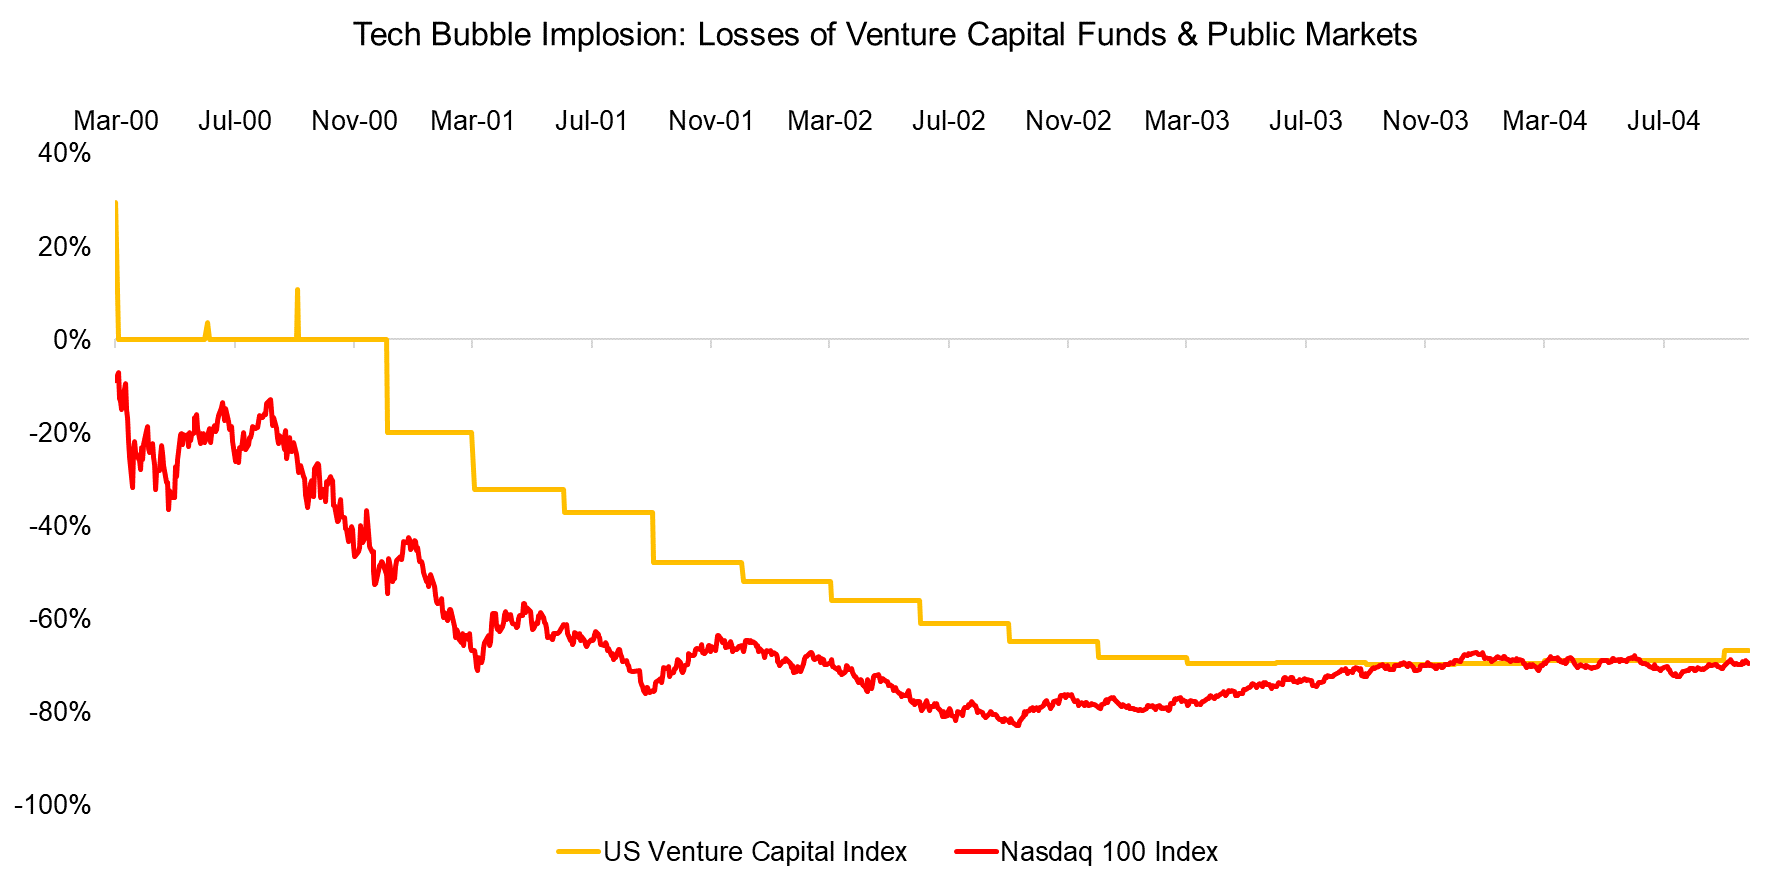 Tech Bubble Implosion Losses of Venture Capital Funds & Public Markets